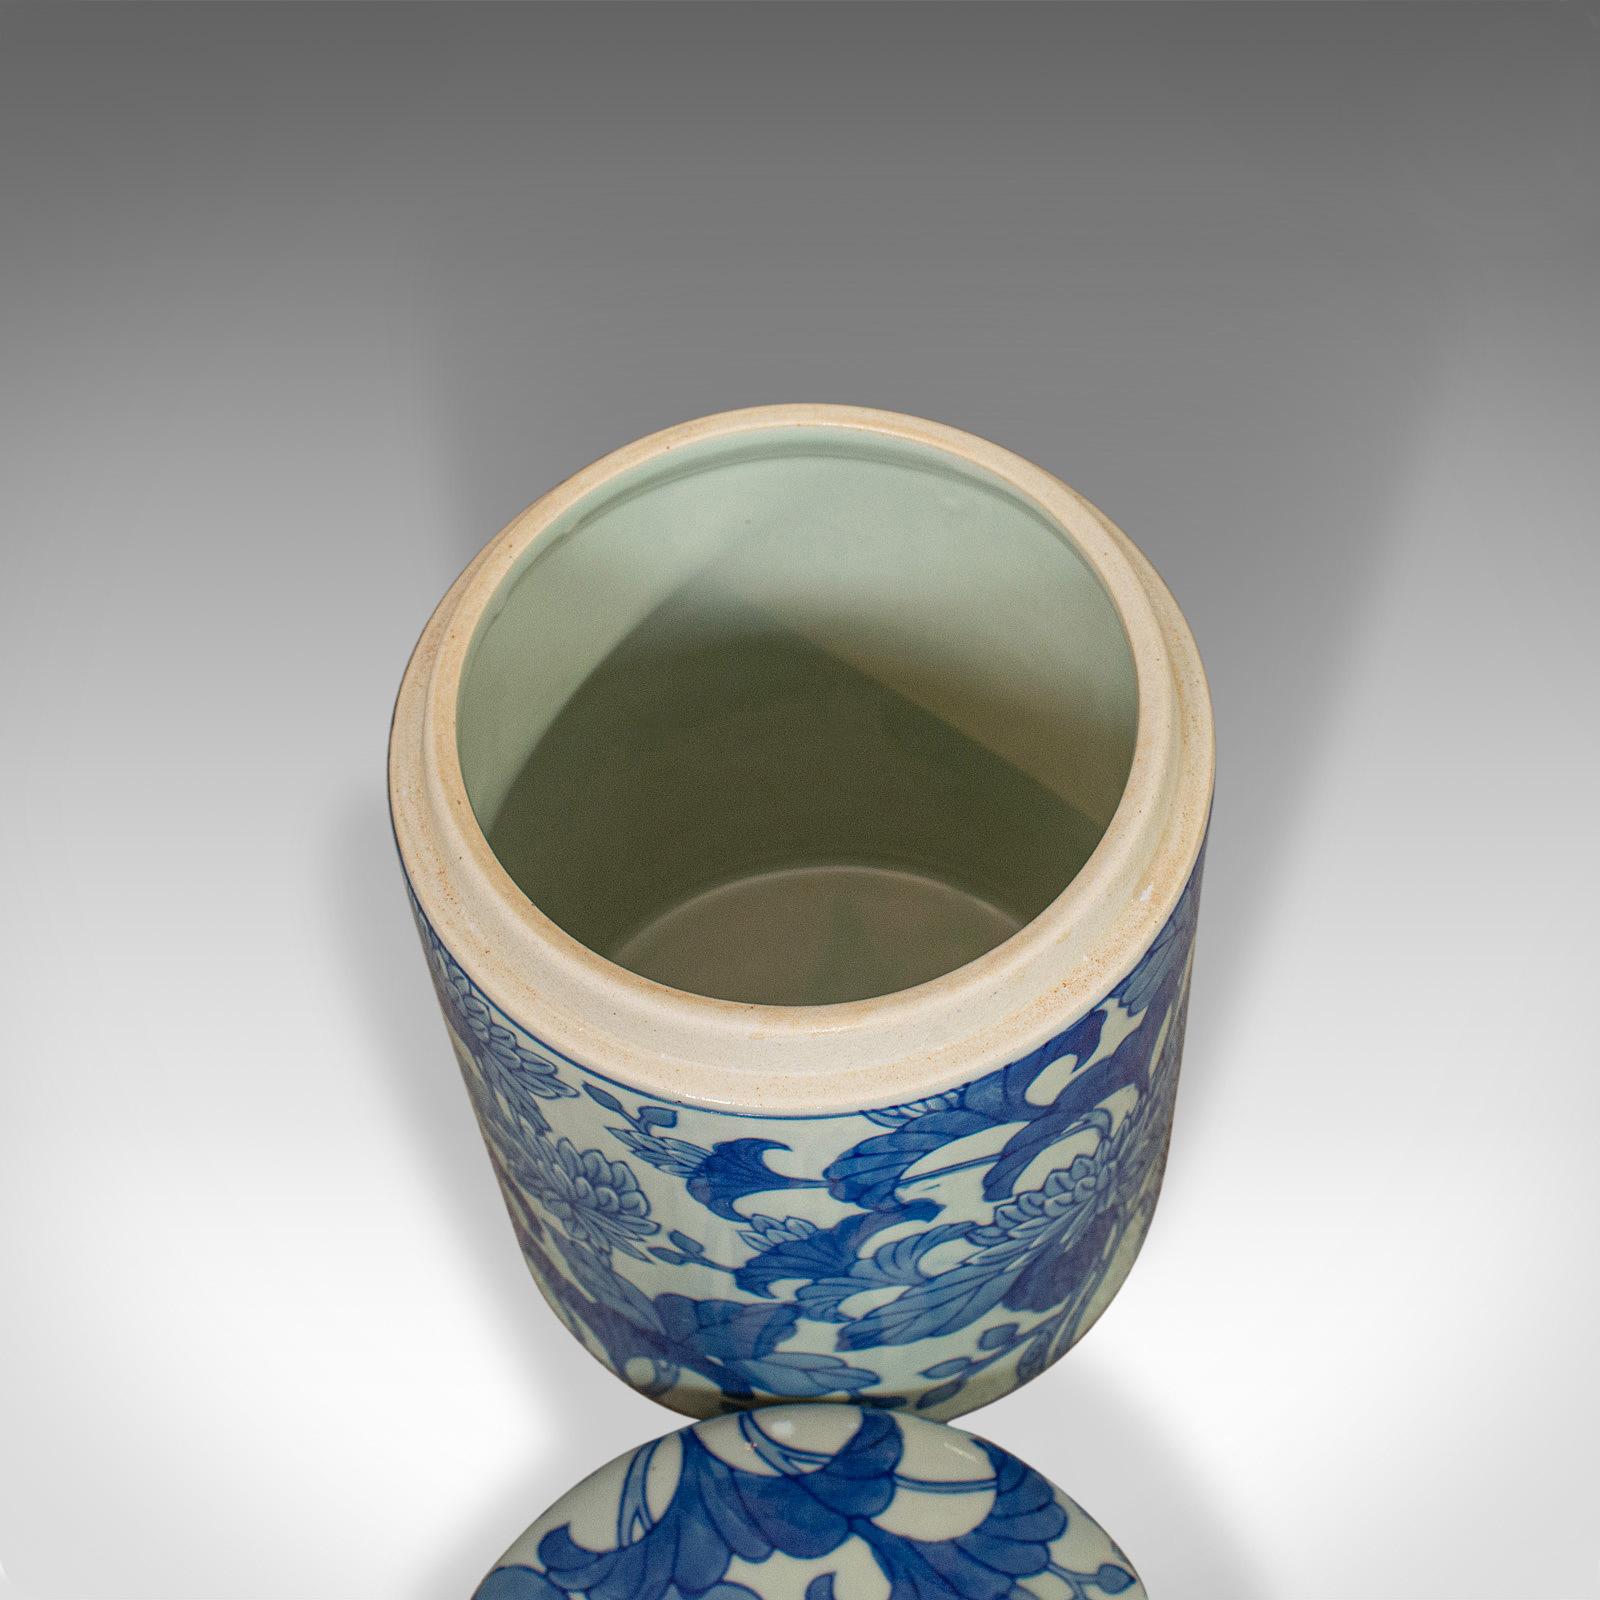 Vintage Chinese Jar, Oriental, Ceramic, Caddy, Urn, Painted, Floral, Pattern 1